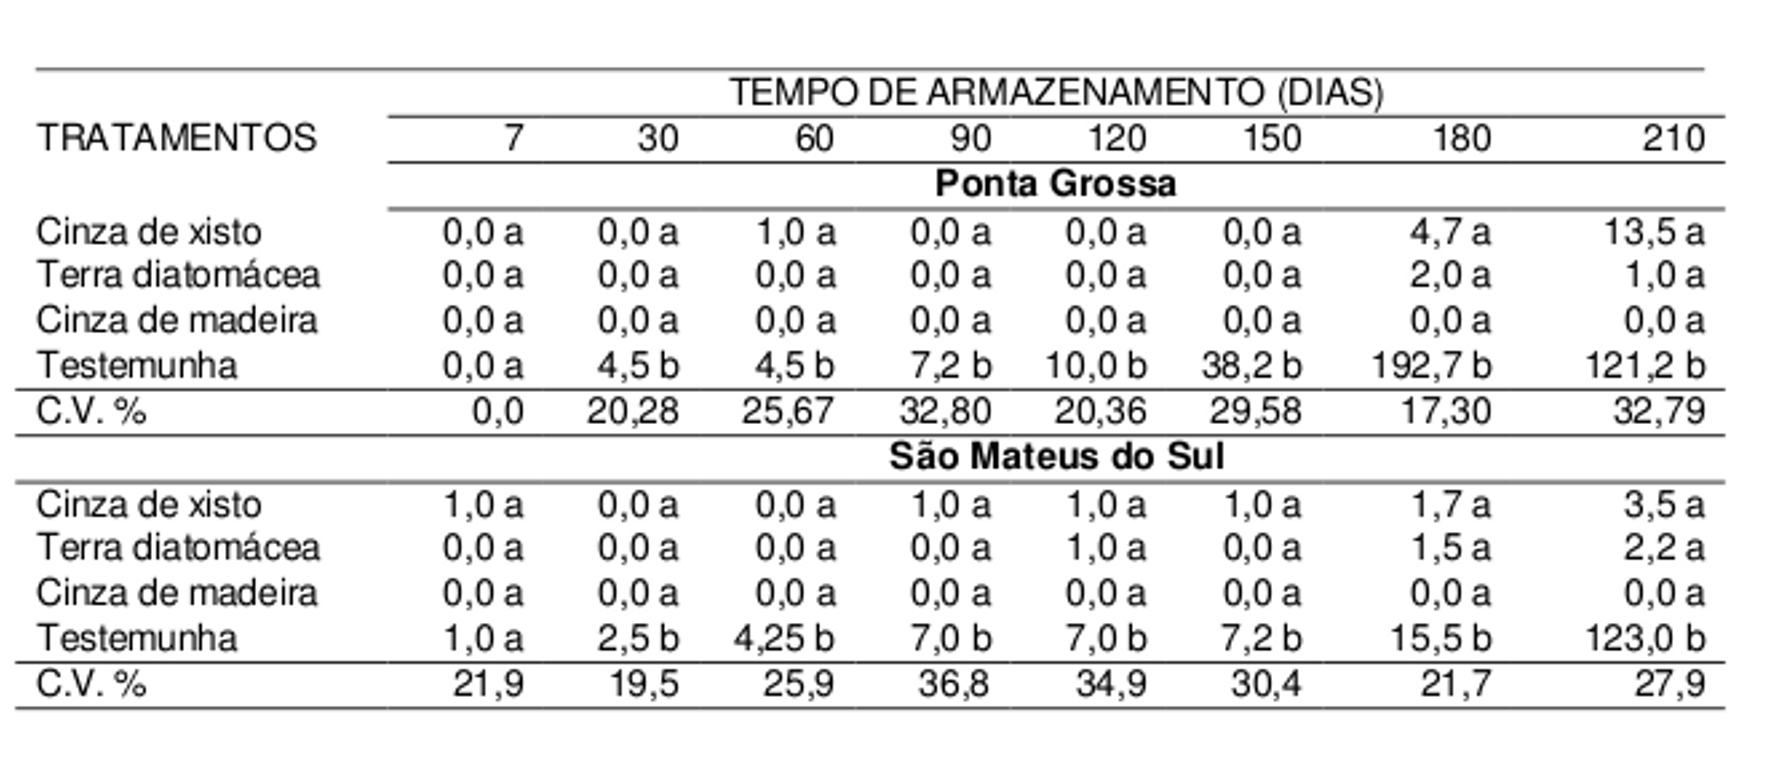 Silva, Ahrens, Paixão, Scora Neto, Romel, Comiran, Nazareno & Coelho Regras para Análise de Sementes, RAS (BRASIL, 2009).